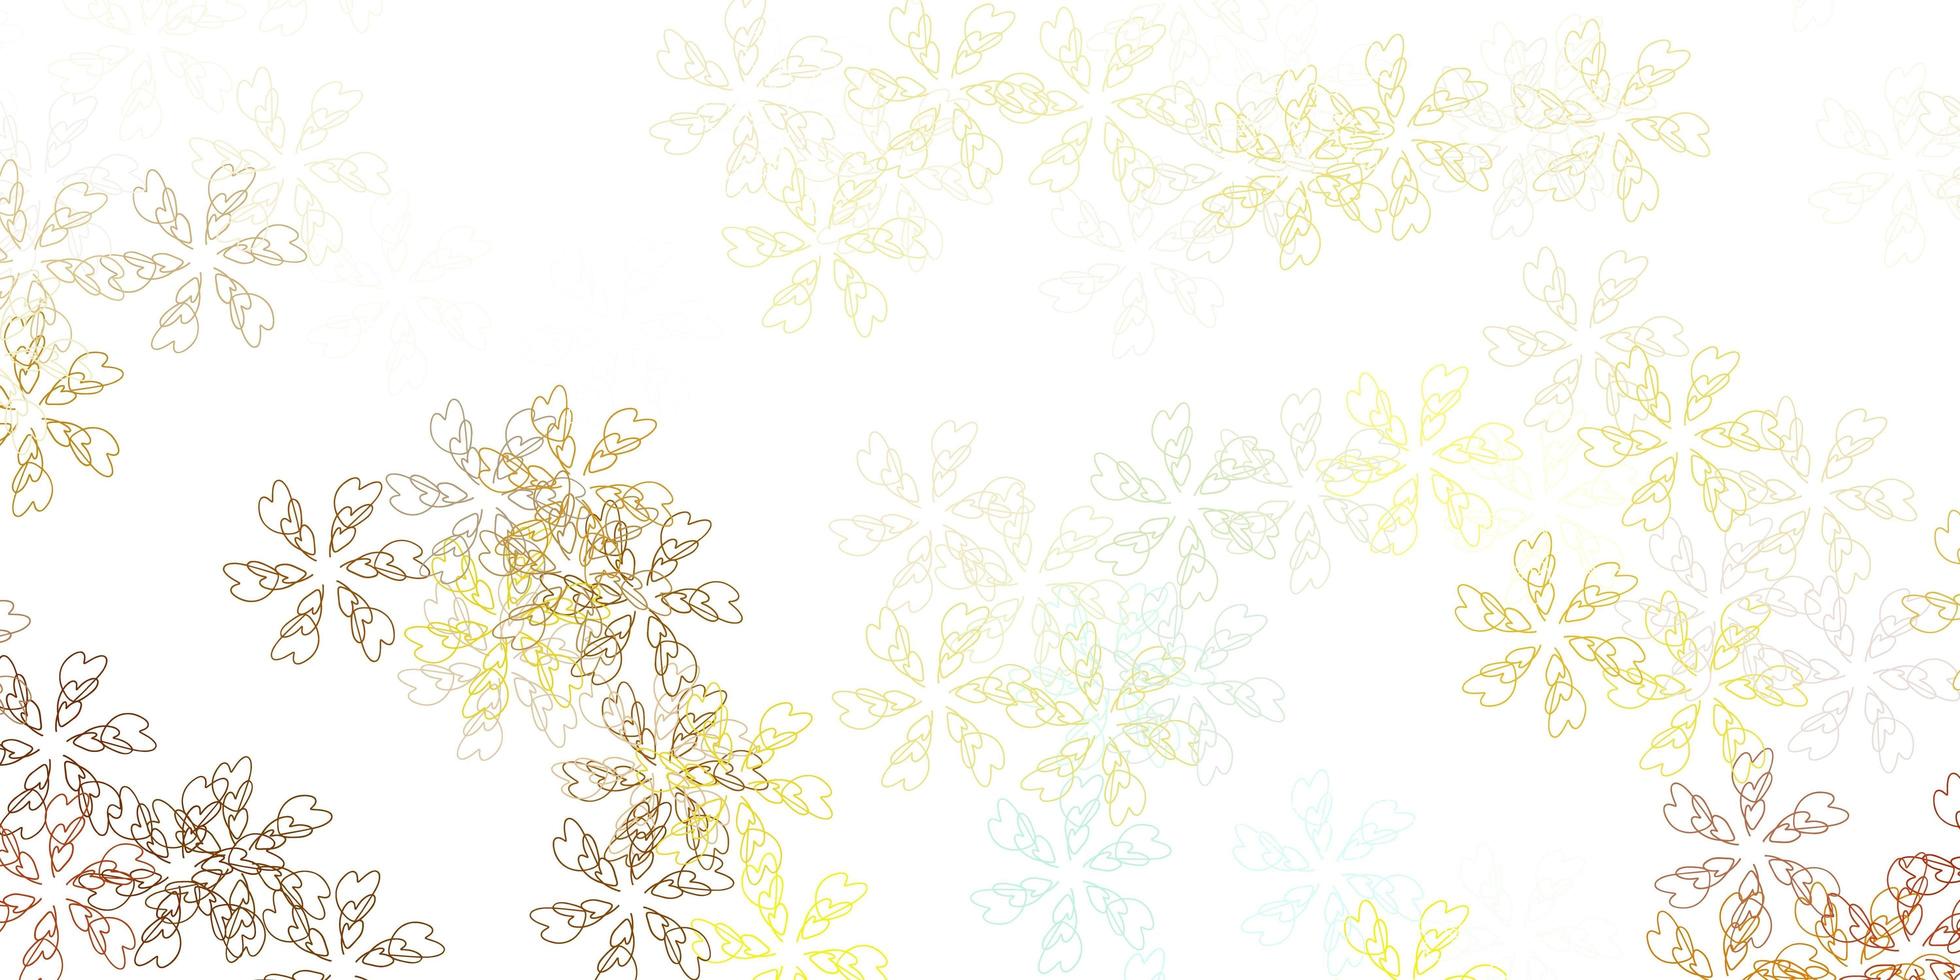 ljusblå, gul vektor abstrakt mönster med blad.